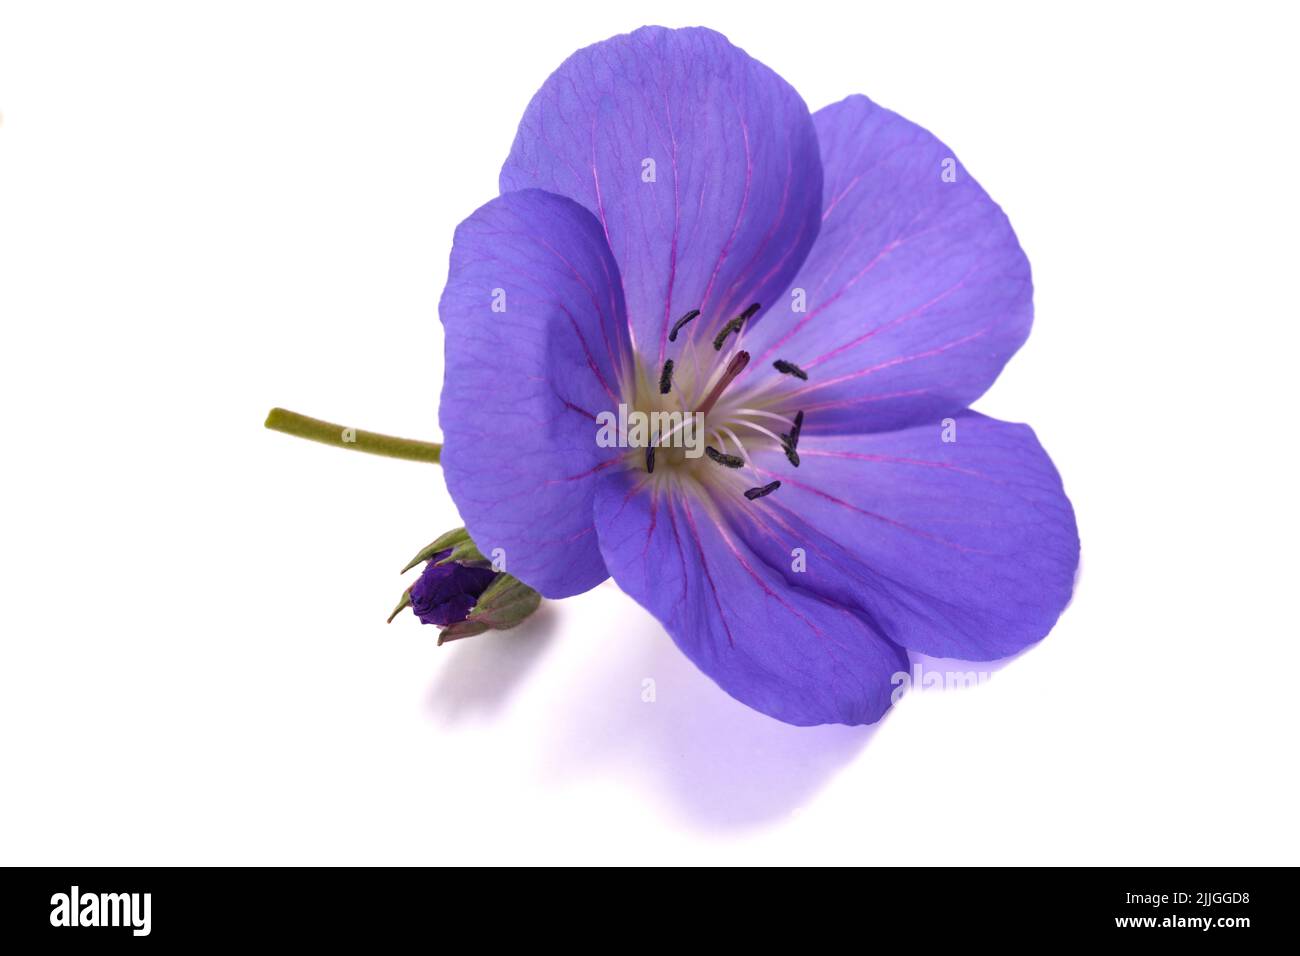 Geranium flower   isolated on white background Stock Photo